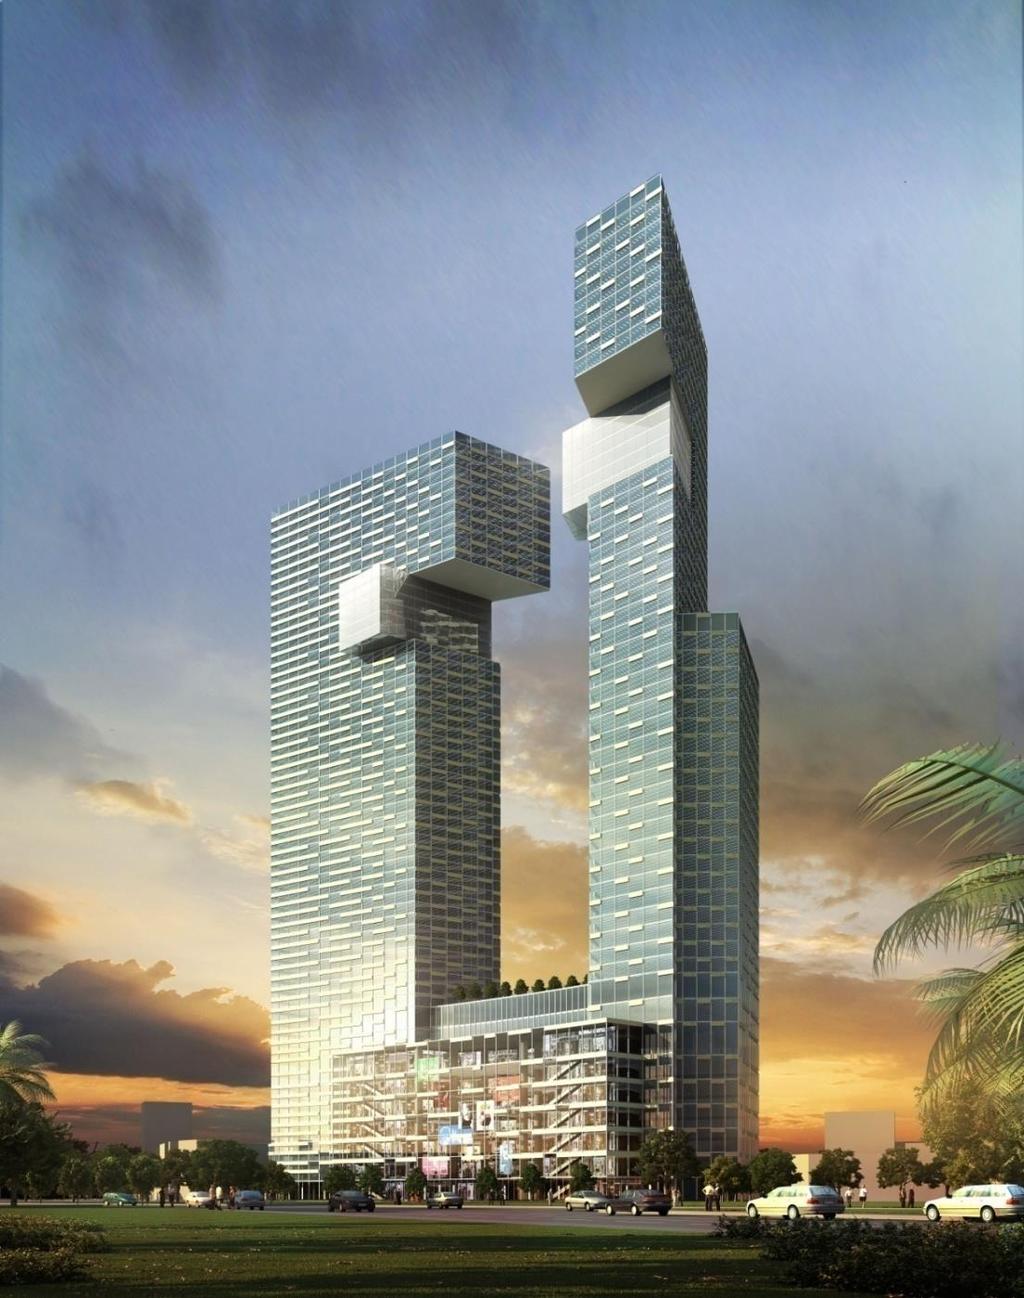 THÁP ĐÔI THE ONE THE ONE TWIN TOWER SỐ 1 PHẠM NGŨ LÃO TP HỒ CHÍ MINH 1 PHAM NGU LAO - HCMC 2011 2016 CĐT: BITEXCO 55 tầng/48 tầng + 5 tầng